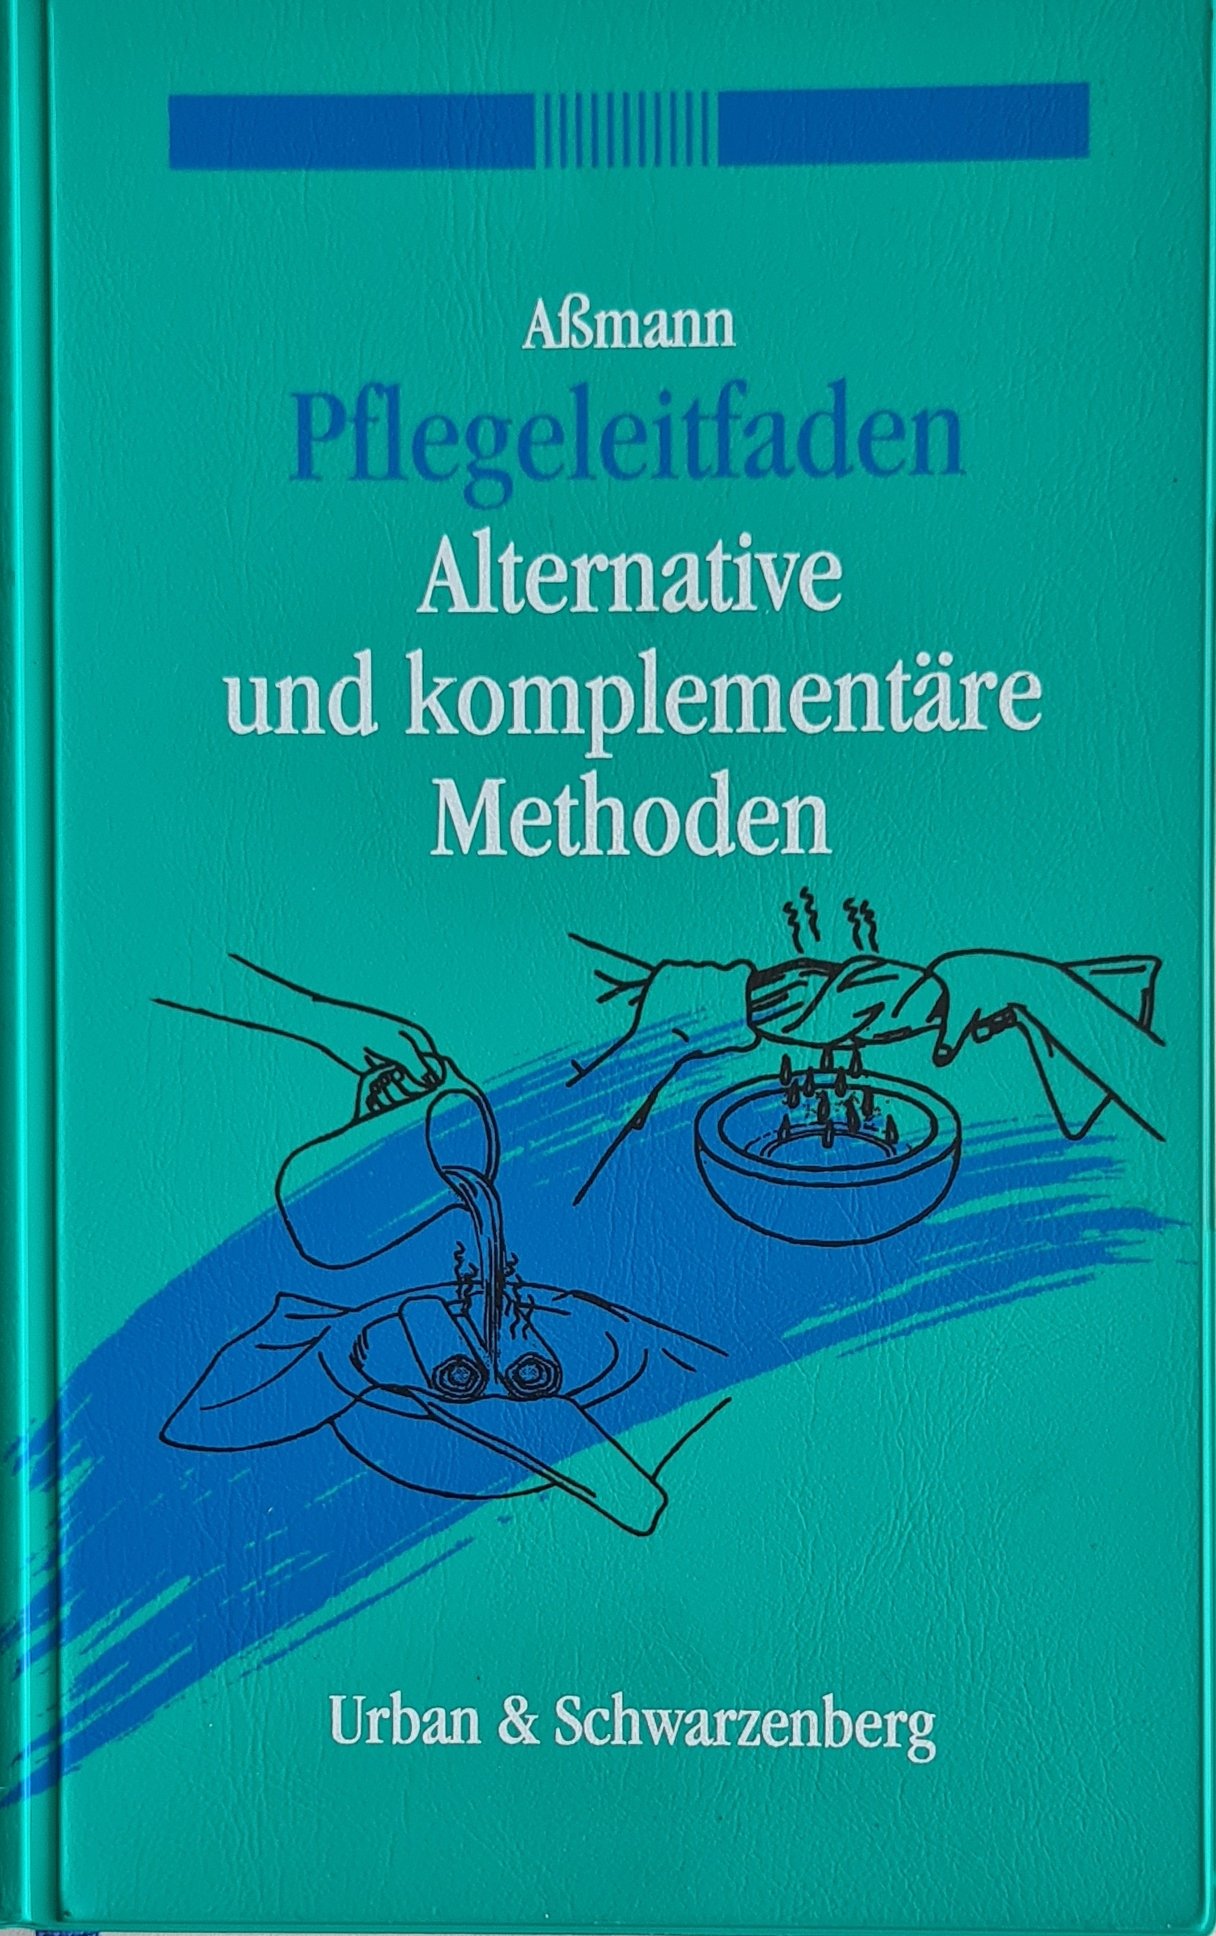 Pflegeleitfaden Alternative und komplementäre Methoden (Krankenhausmuseum Bielefeld e.V. CC BY-NC-SA)